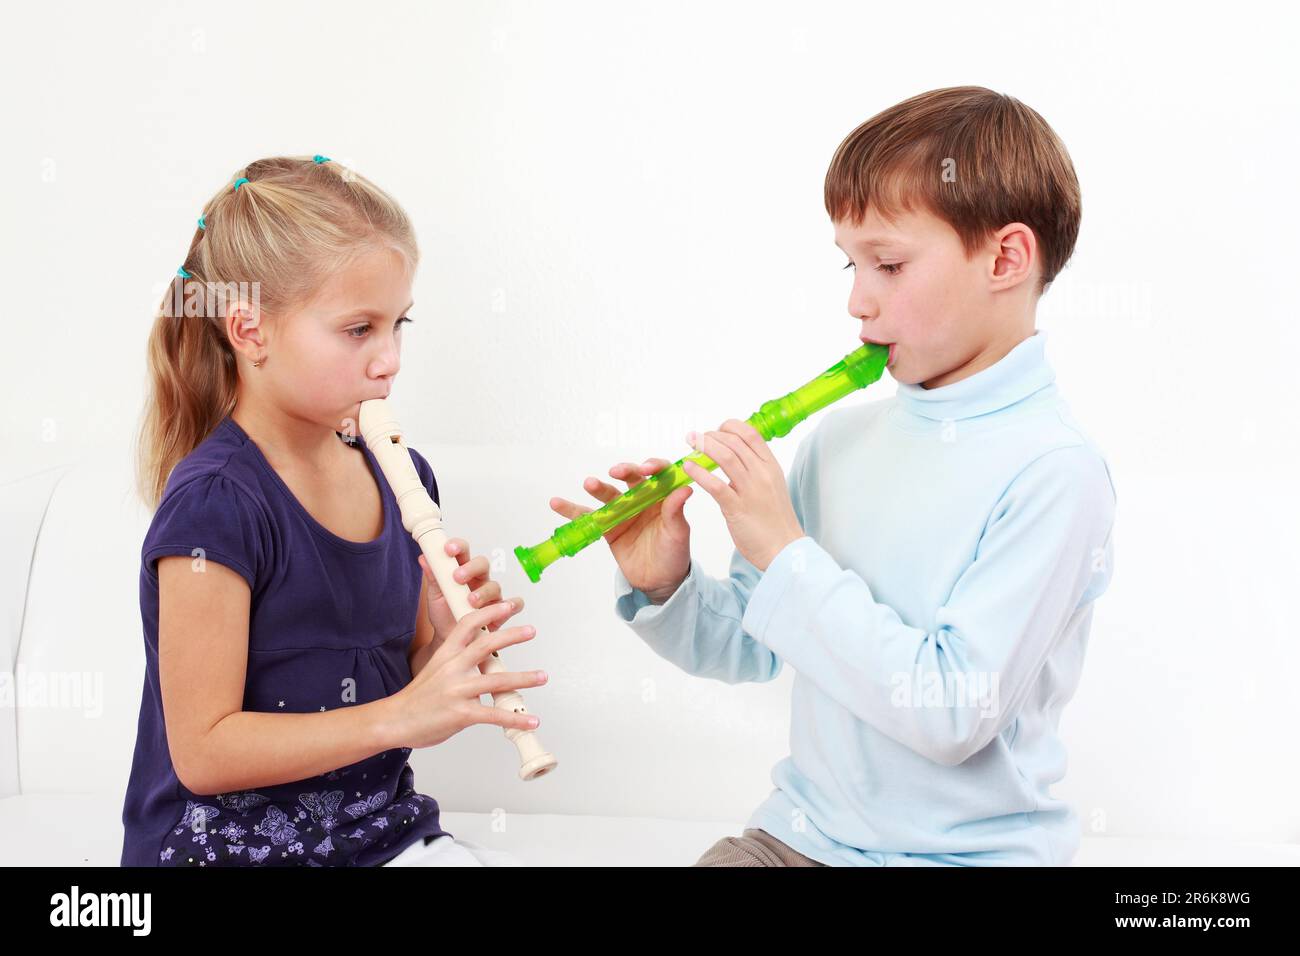 Les enfants jouant ensemble flûte mignon Banque D'Images